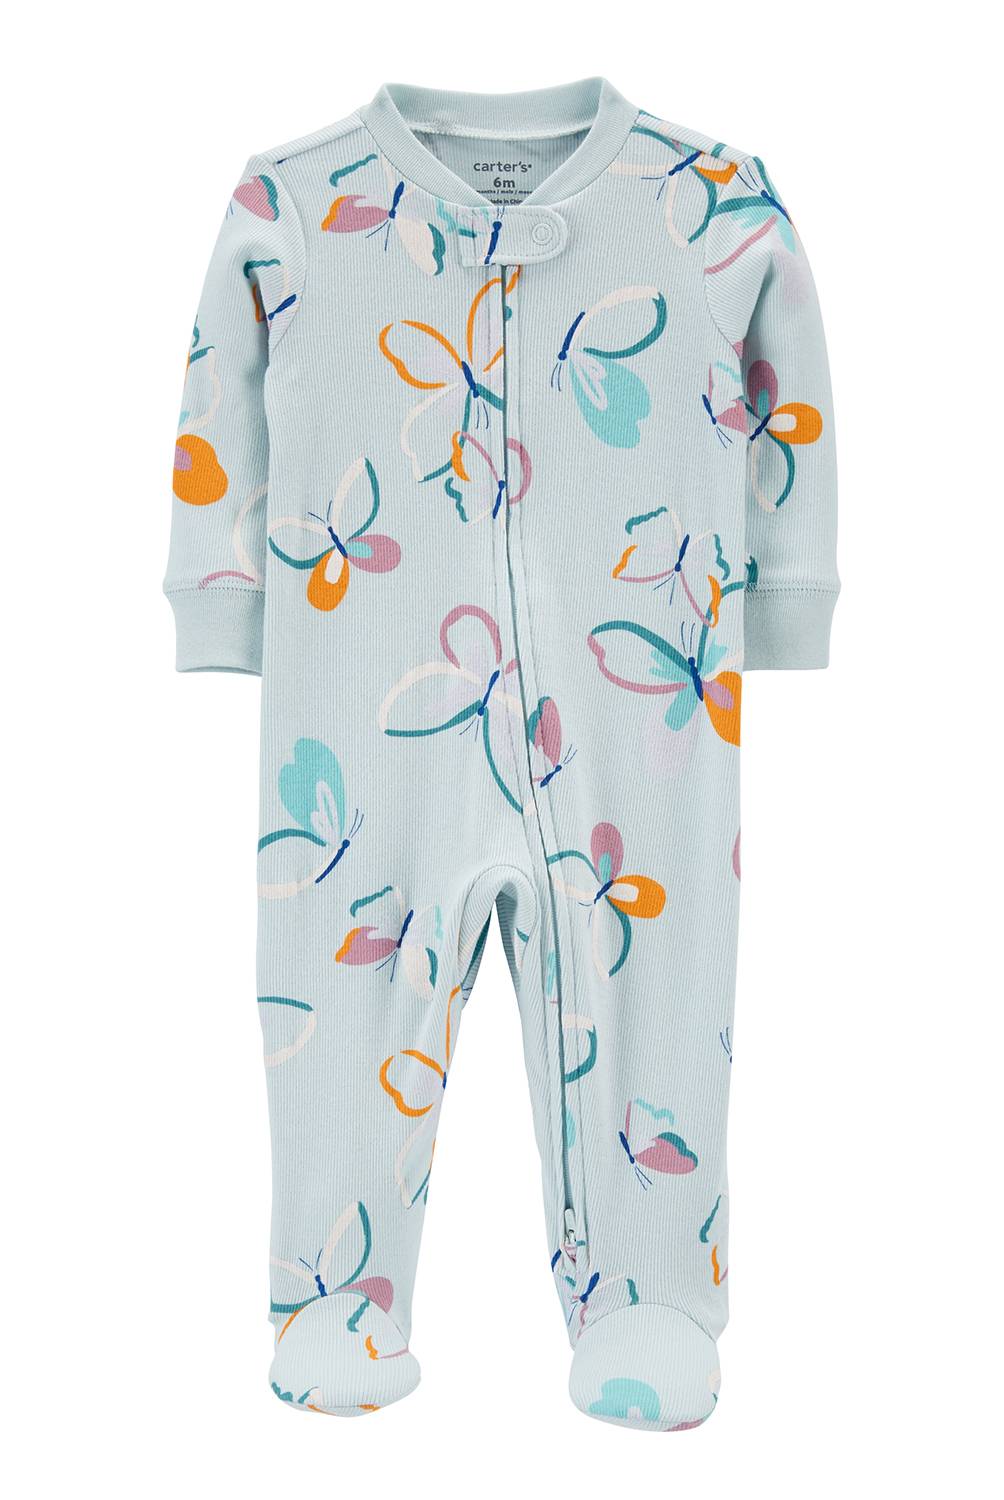 CARTER'S - Pijama Algodón Bebé niña